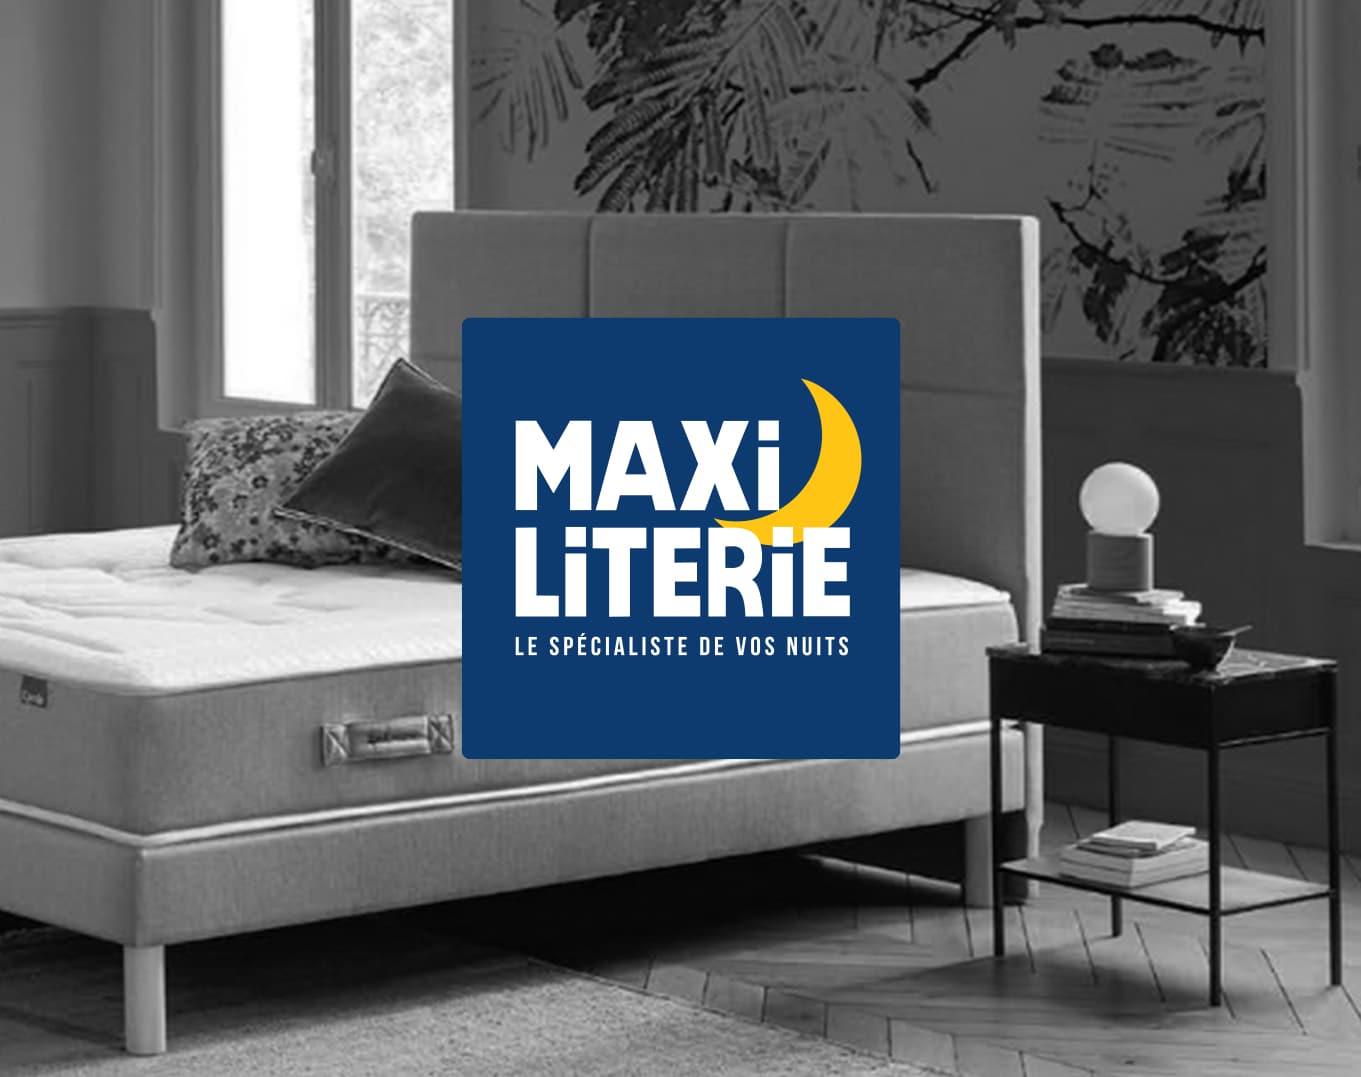 MaxiLiterie le spécialiste de vos nuits, lit, sommier et matelas chez Infiny Home Cherbourg